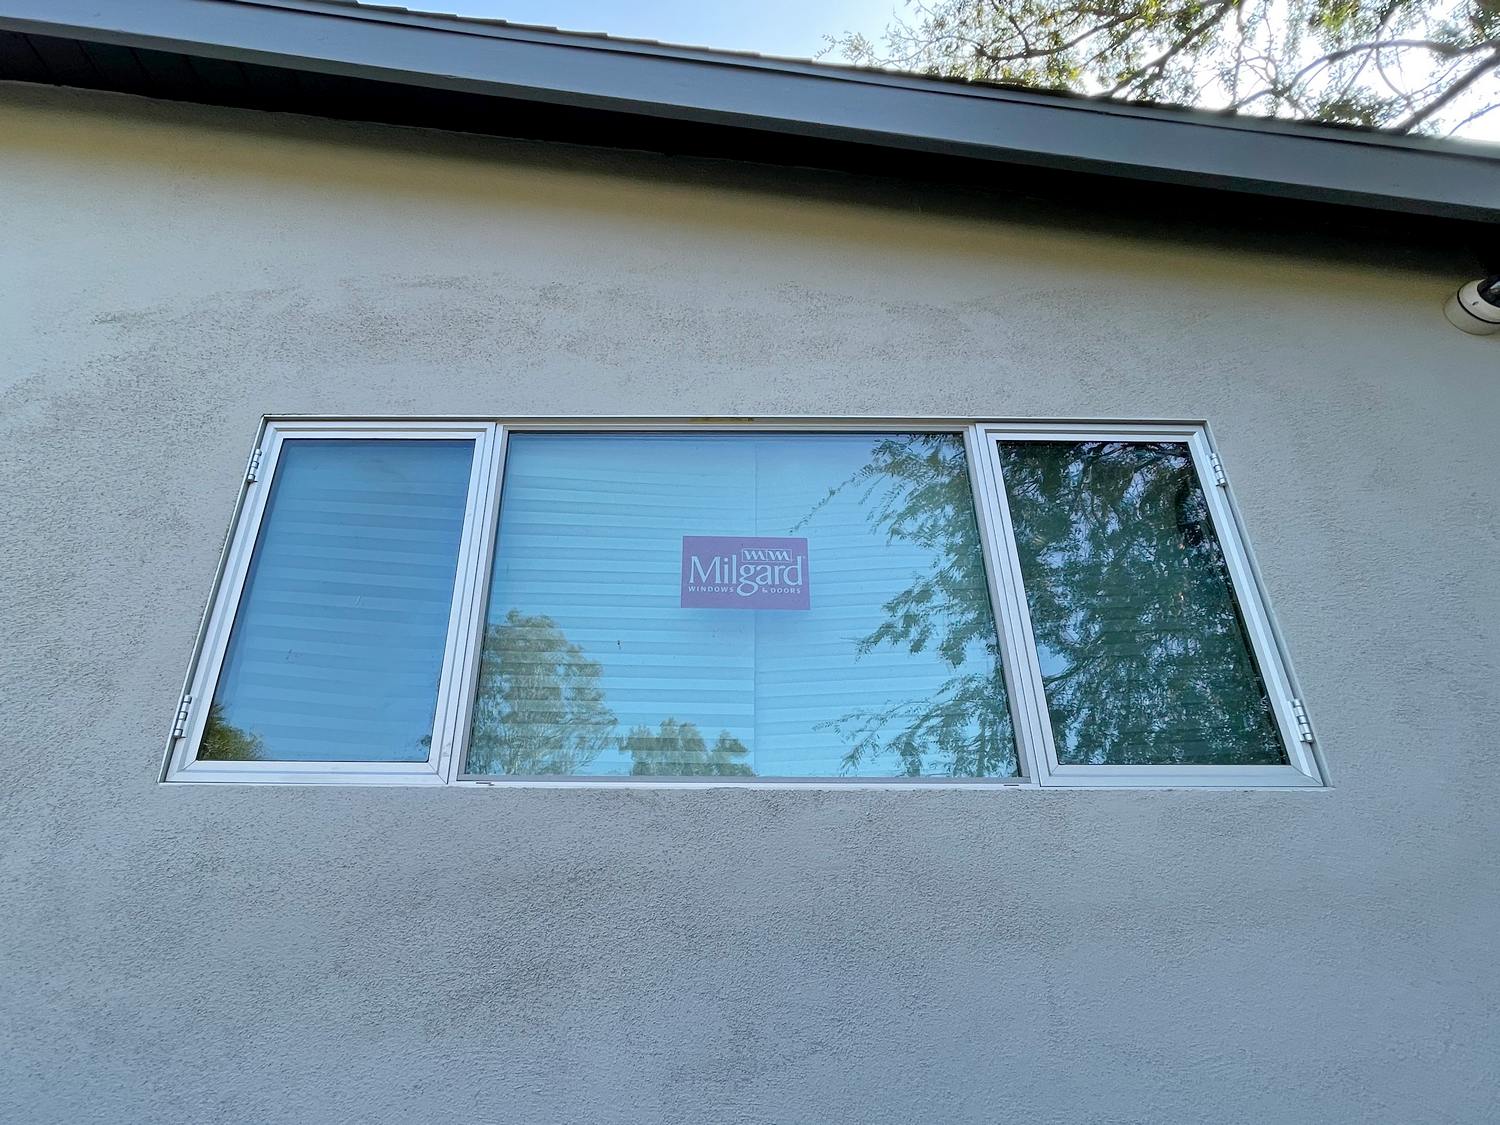 Milgard Windows and Door Replacement in Los Angeles, CA (2)